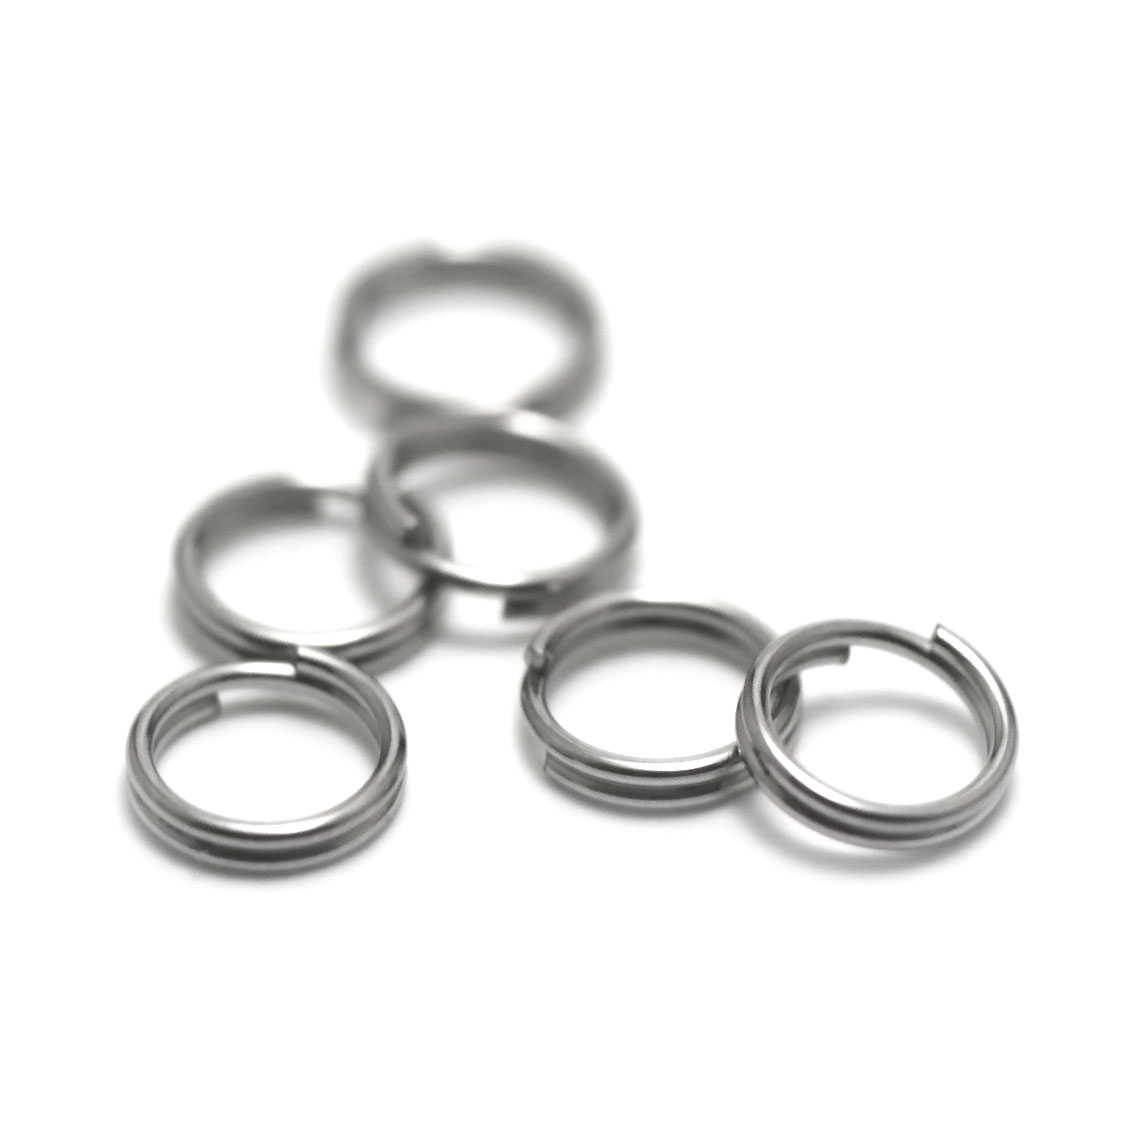 20 anneaux doublés en acier inox 6 mm, steel stainless